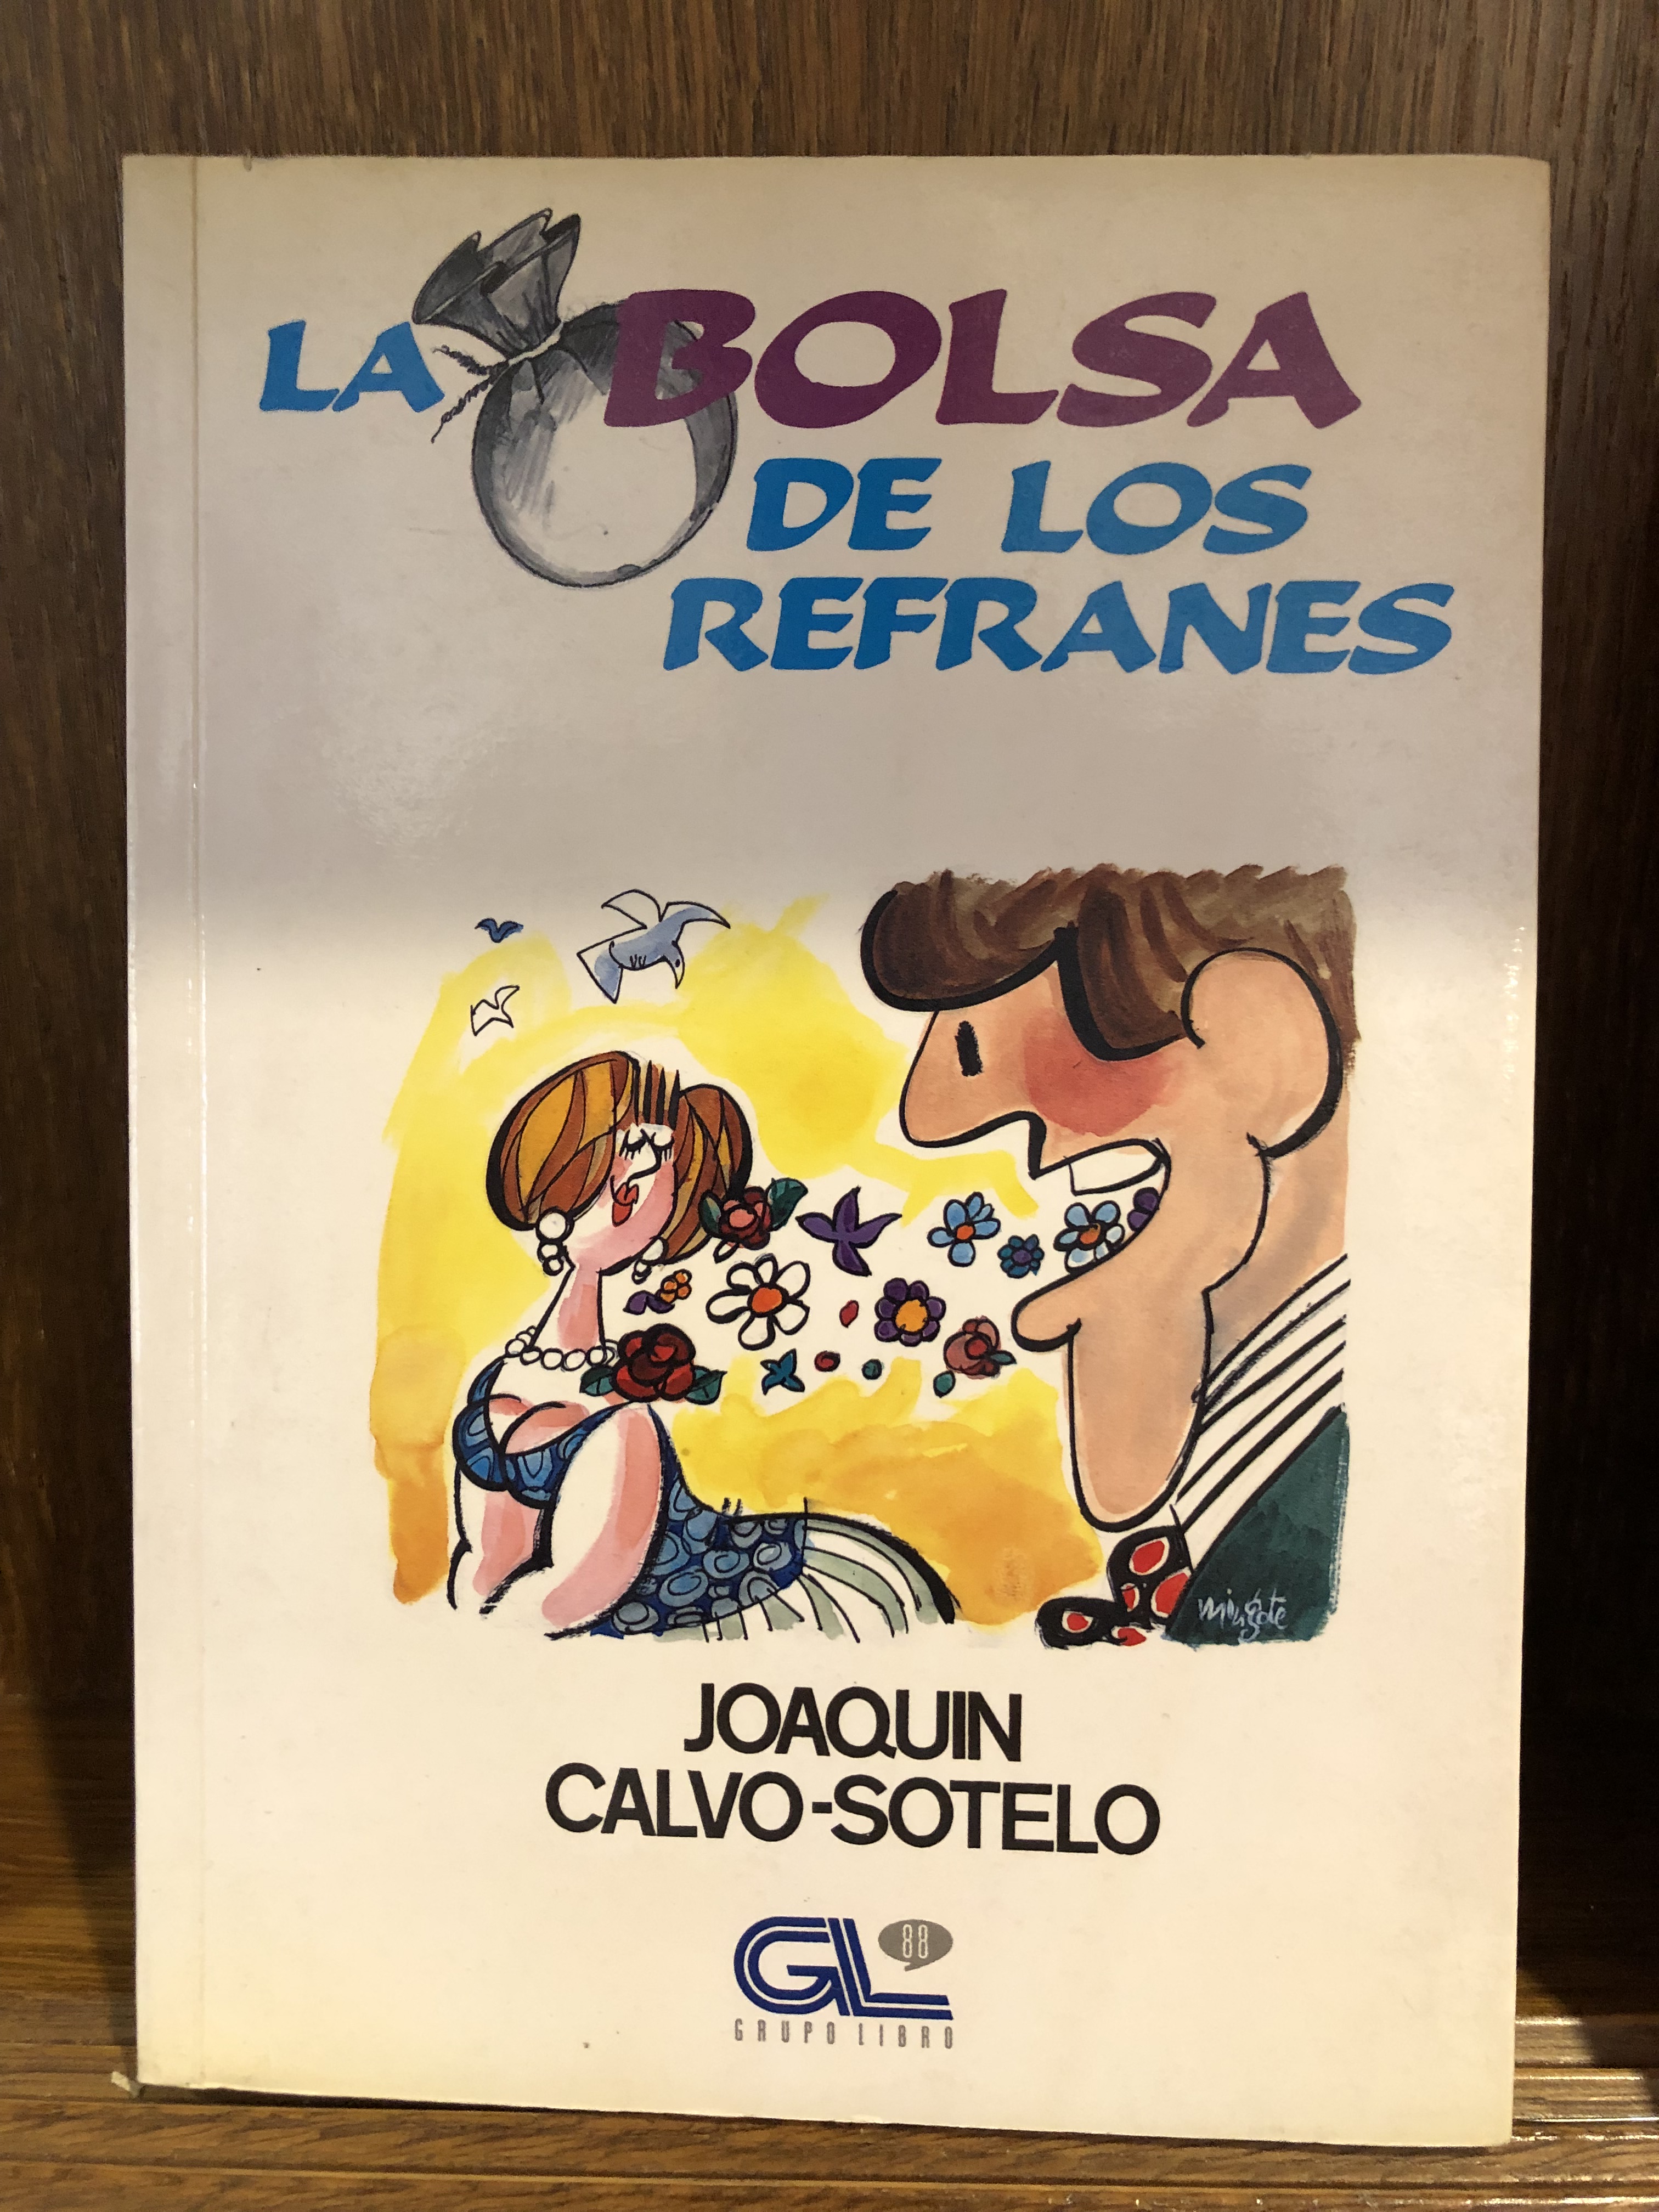 En 1992 el académico Antonio Mingote ilustraba así la cubierta de un libro de refranes del también académico Joaquín Calvo Sotelo. El título coincide con el del espacio que el autor presentaba en Televisión Española durante los años setenta.